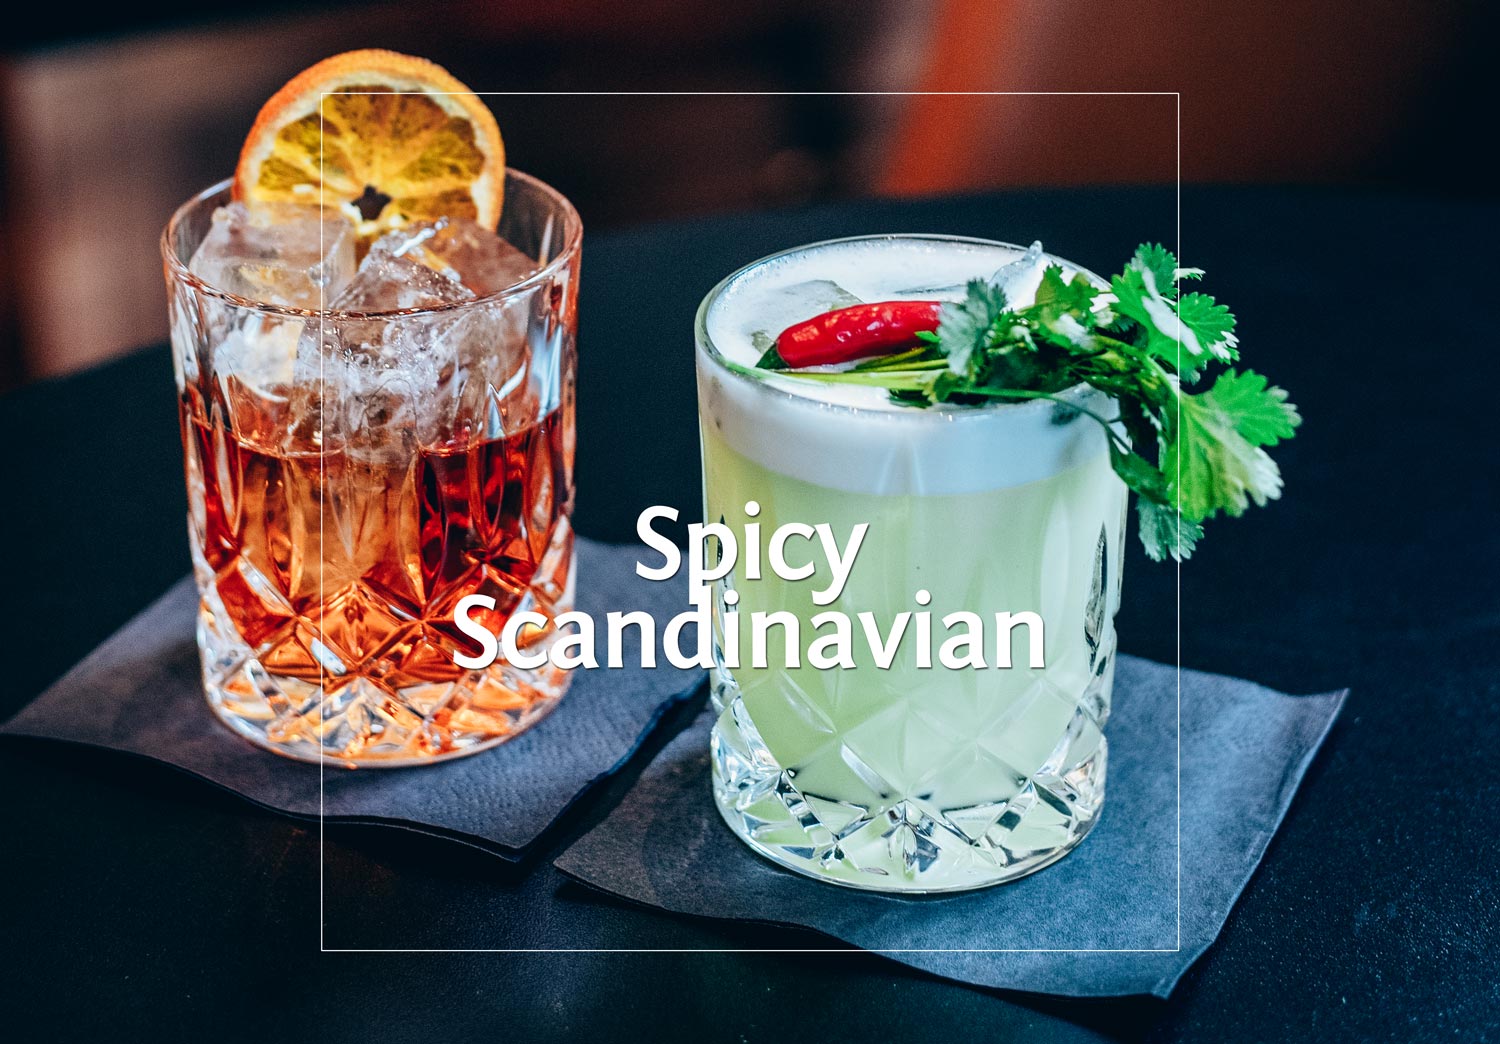 Spicy Scandinavian made of Aquavit